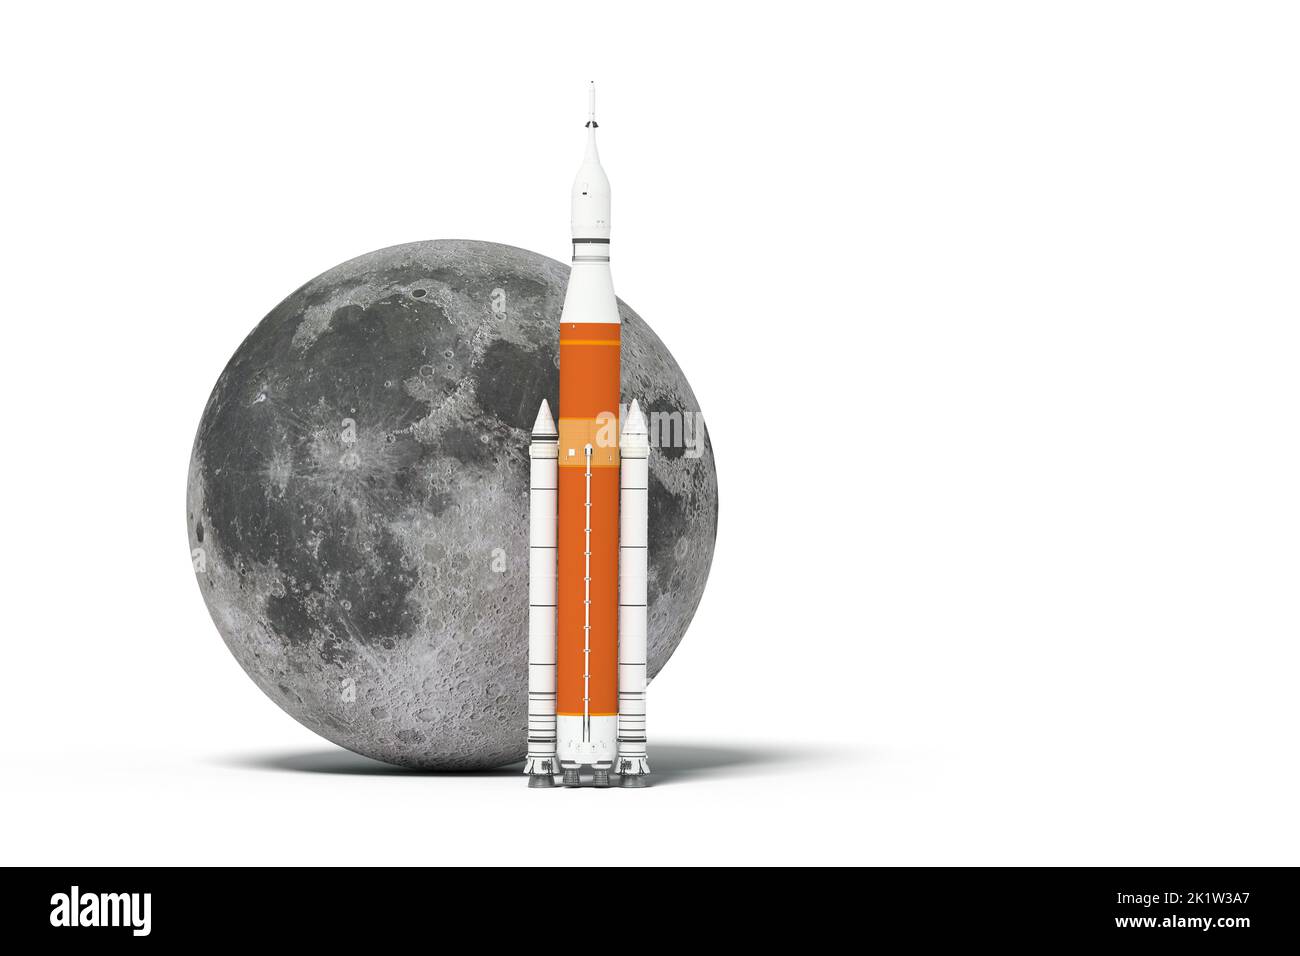 US razzo andare alla luna - modello e mappe fornite dalla NASA - 3D rendering Foto Stock